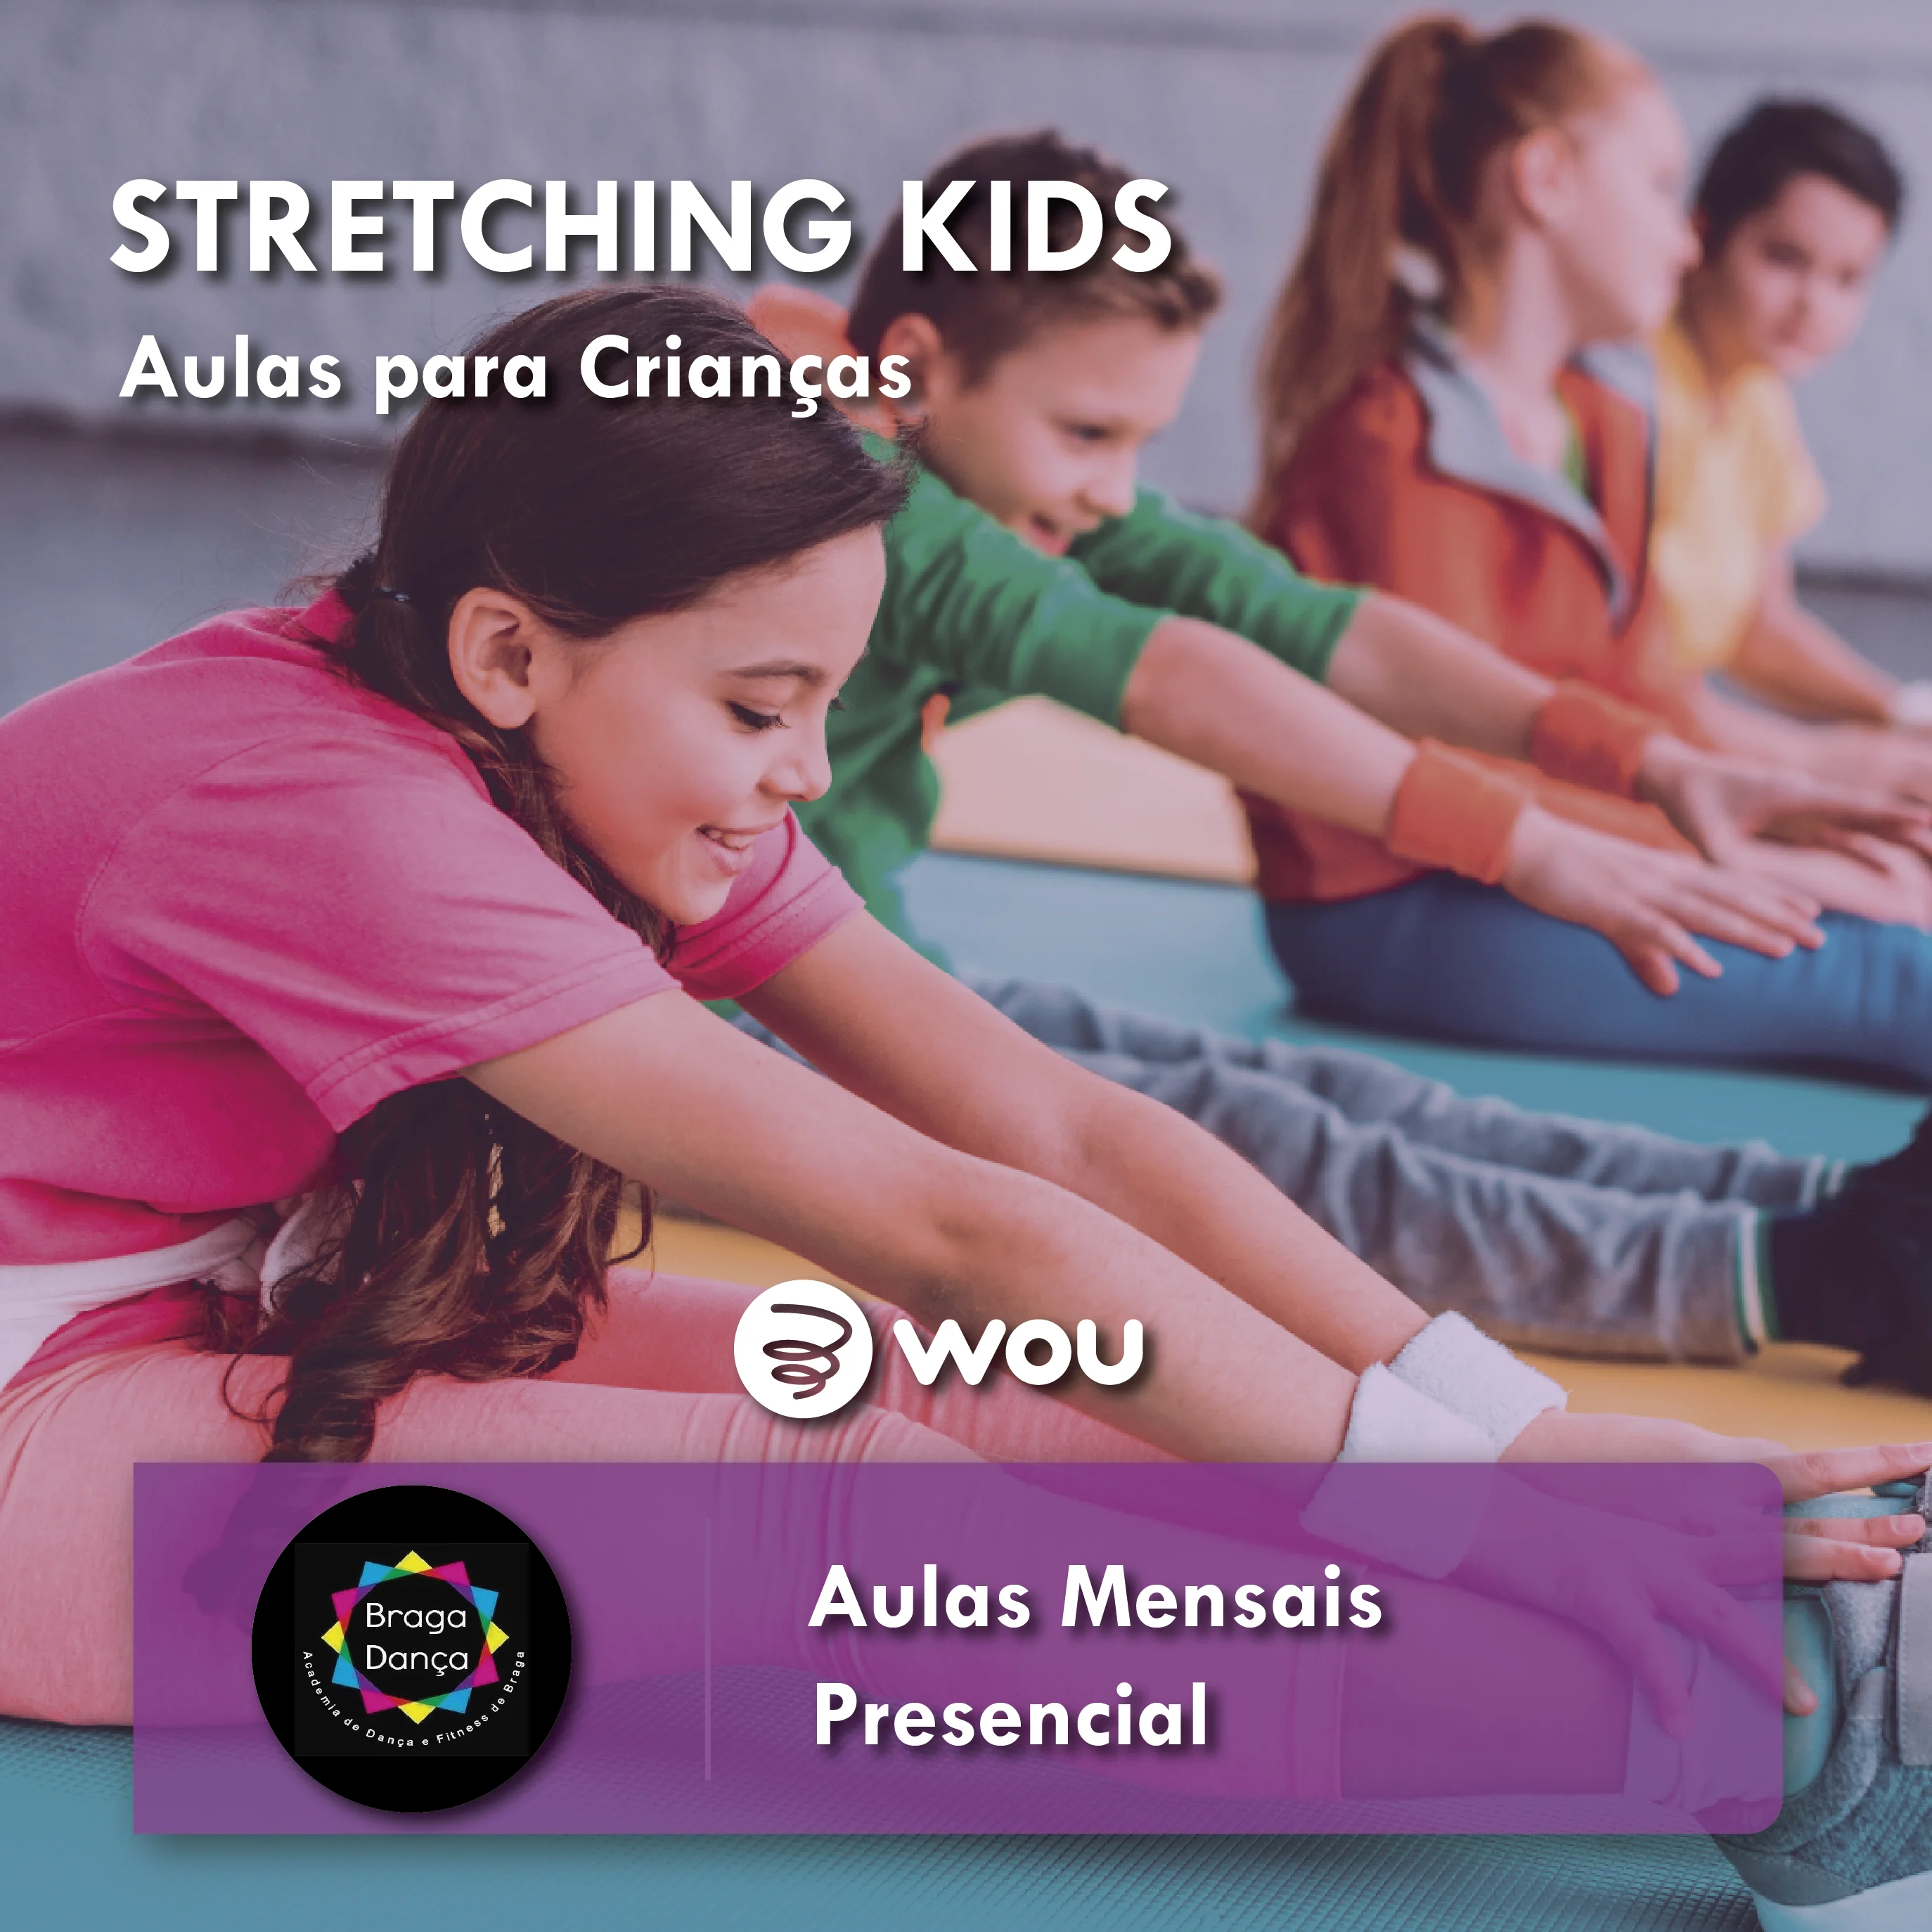 Stretching Kids Classes in Braga